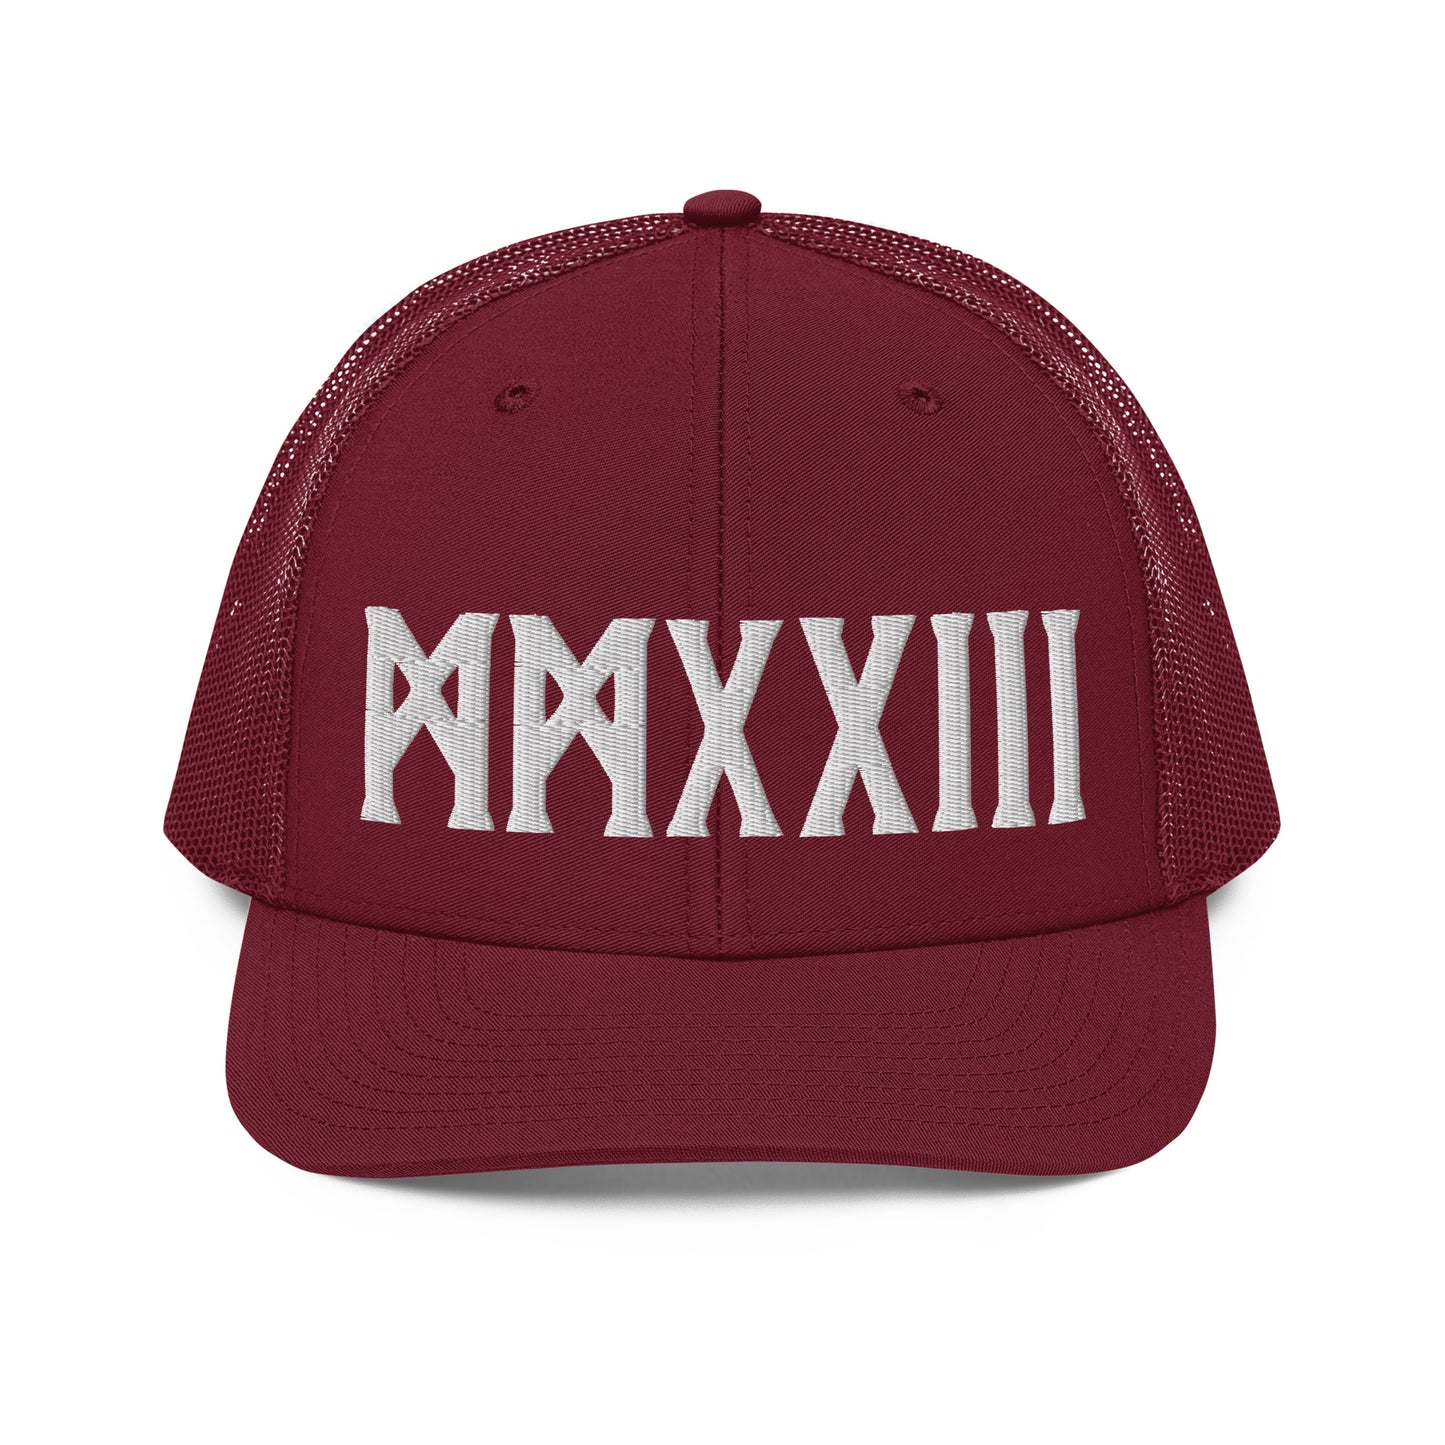 Premium MMXXIII Trucker Cap